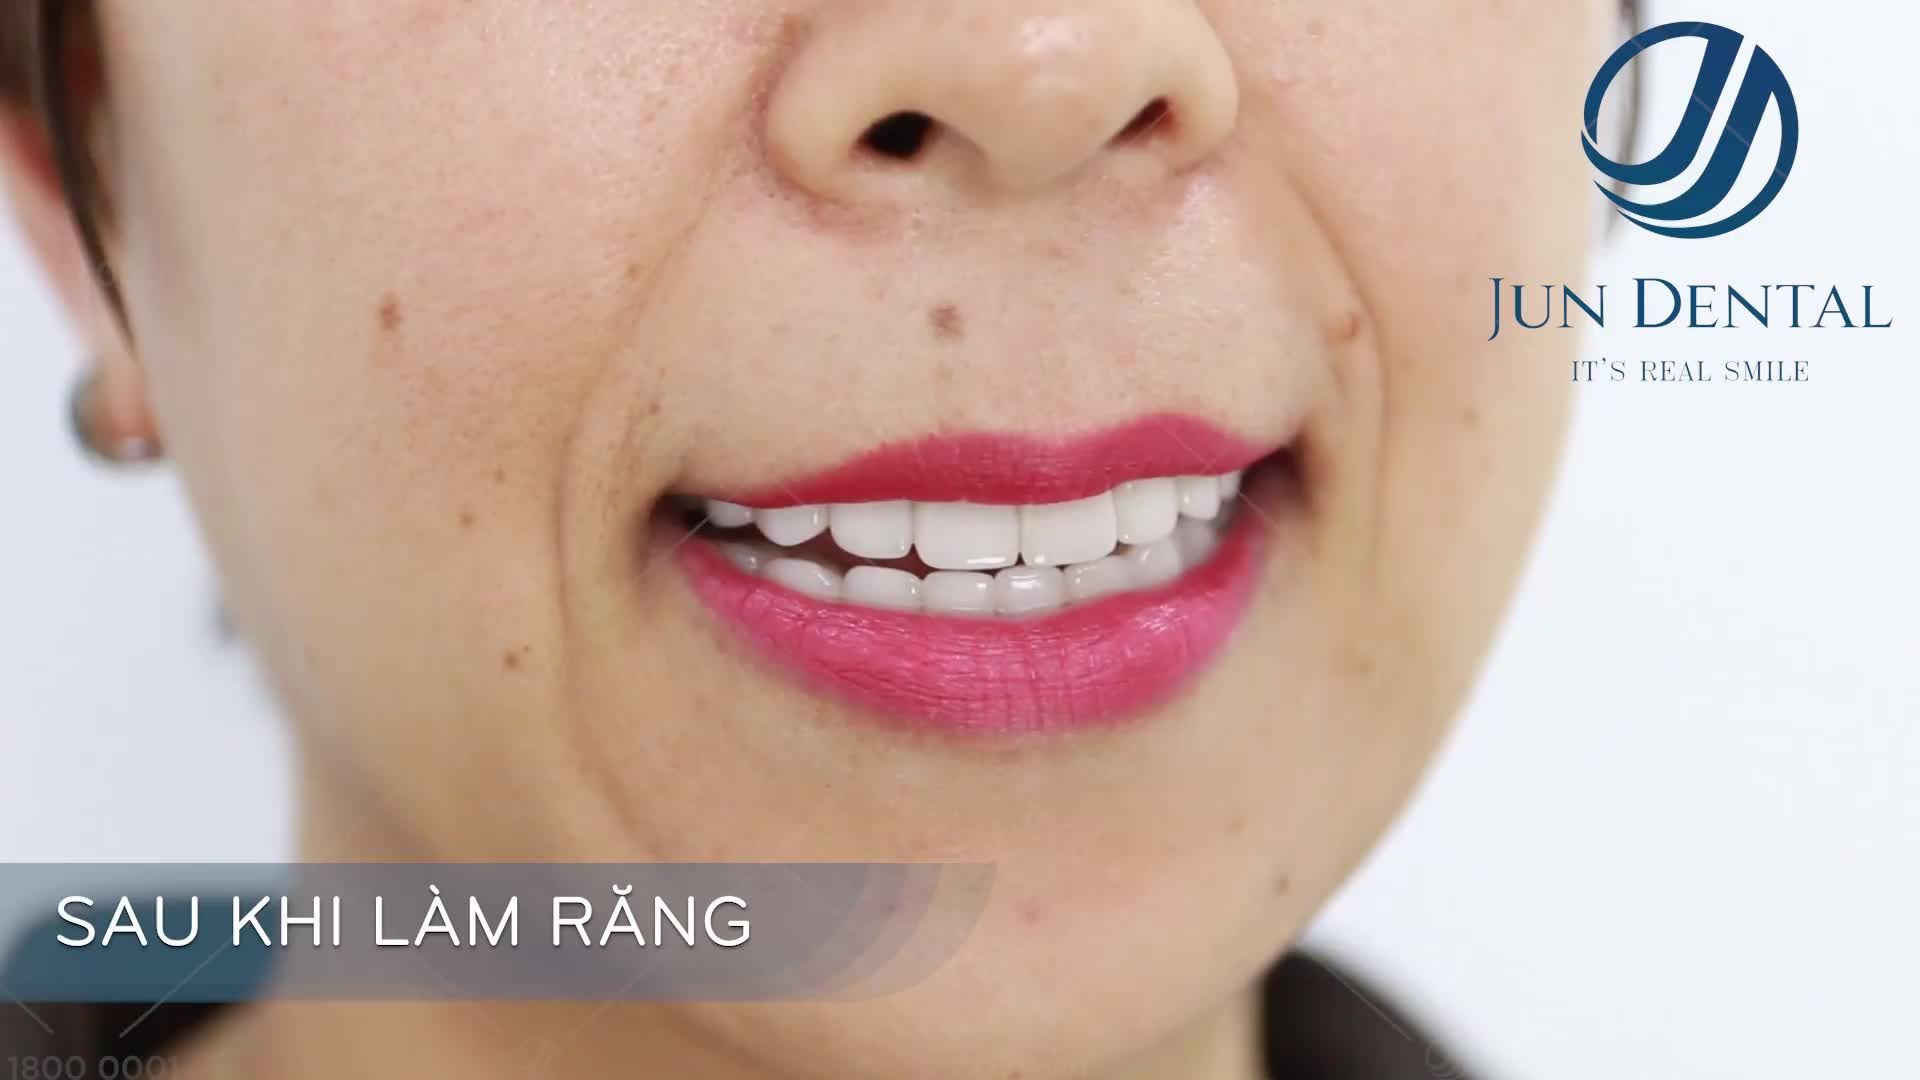 Hình ảnh chị Thu Hòa trước và sau khi làm răng sứ thẩm mỹ tại Jun_Dental bảo tồn răng gốc và vẫn đảm bảo ăn nhai như khi chưa làm răng